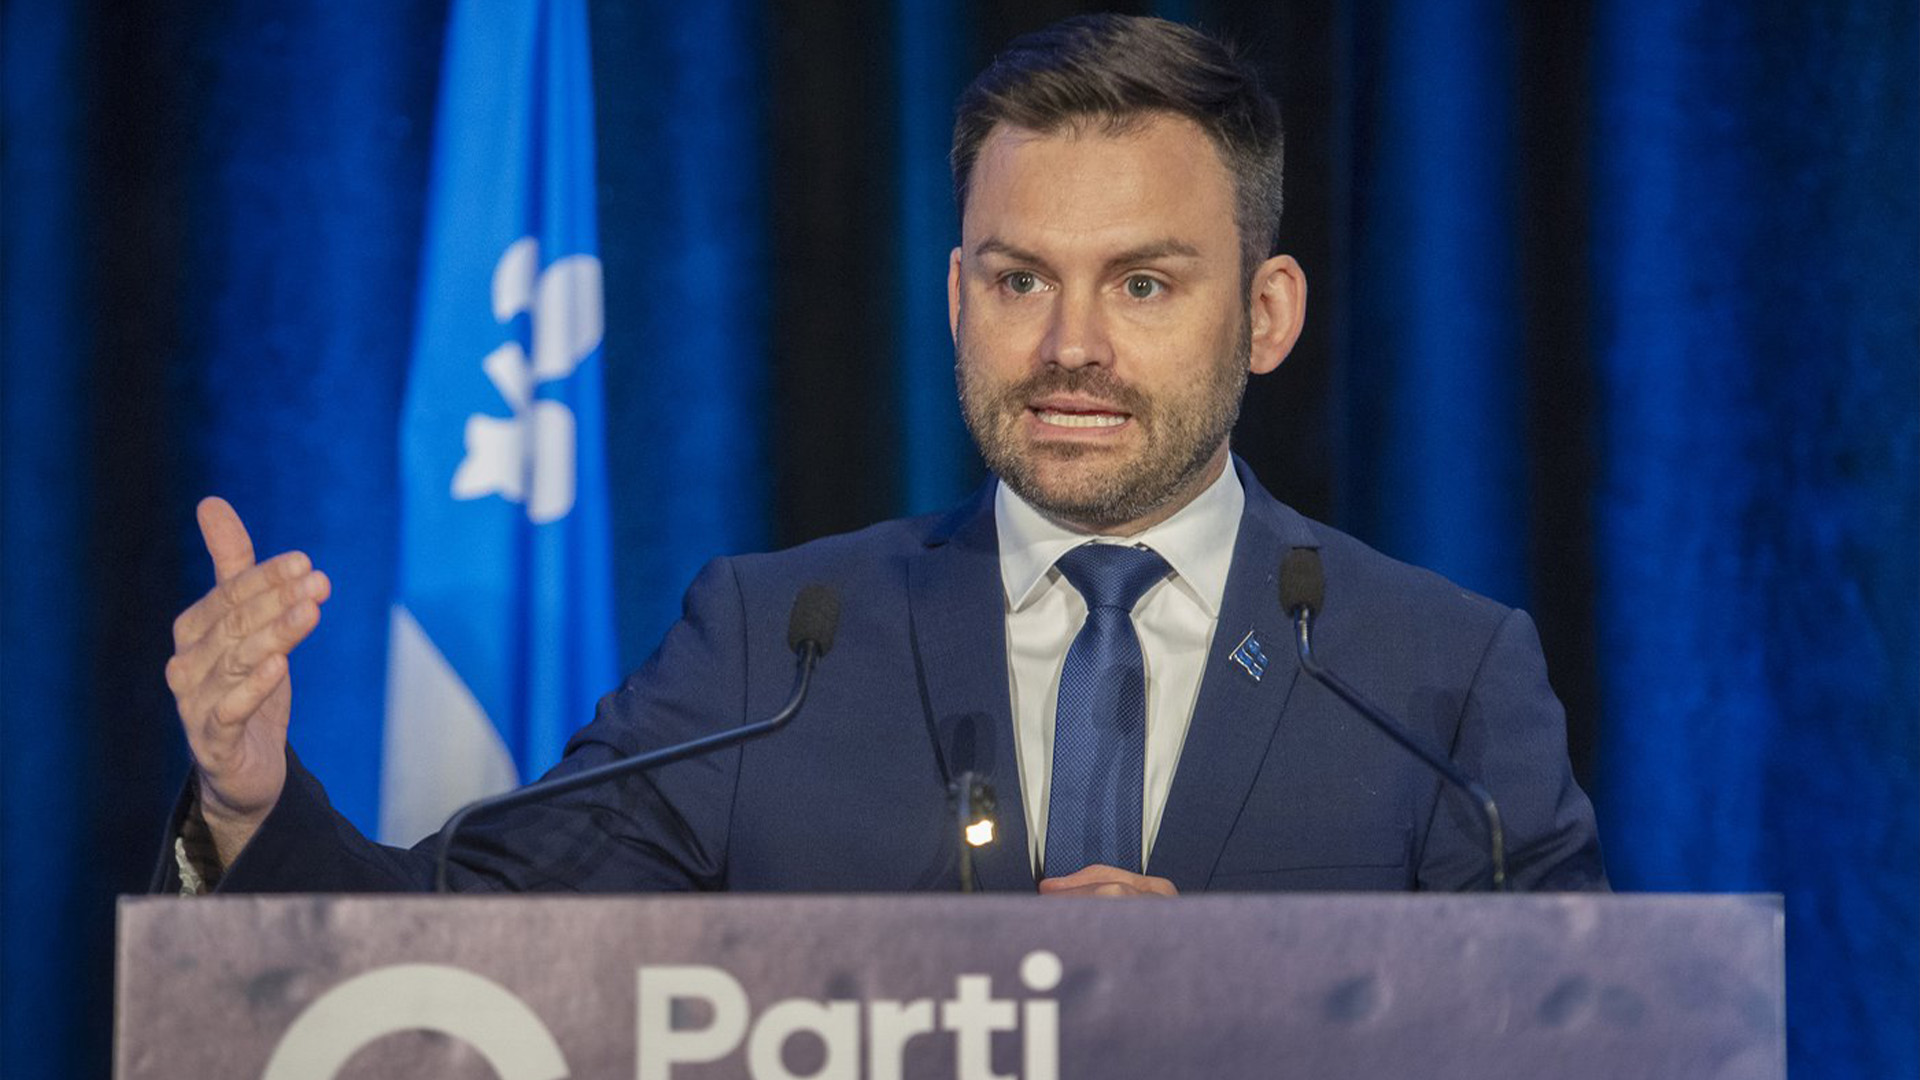 Le chef du Parti québécois, Paul St-Pierre Plamondon, prend la parole lors de la réunion du conseil national du parti à Boucherville, au Québec, le samedi 28 mai 2022.